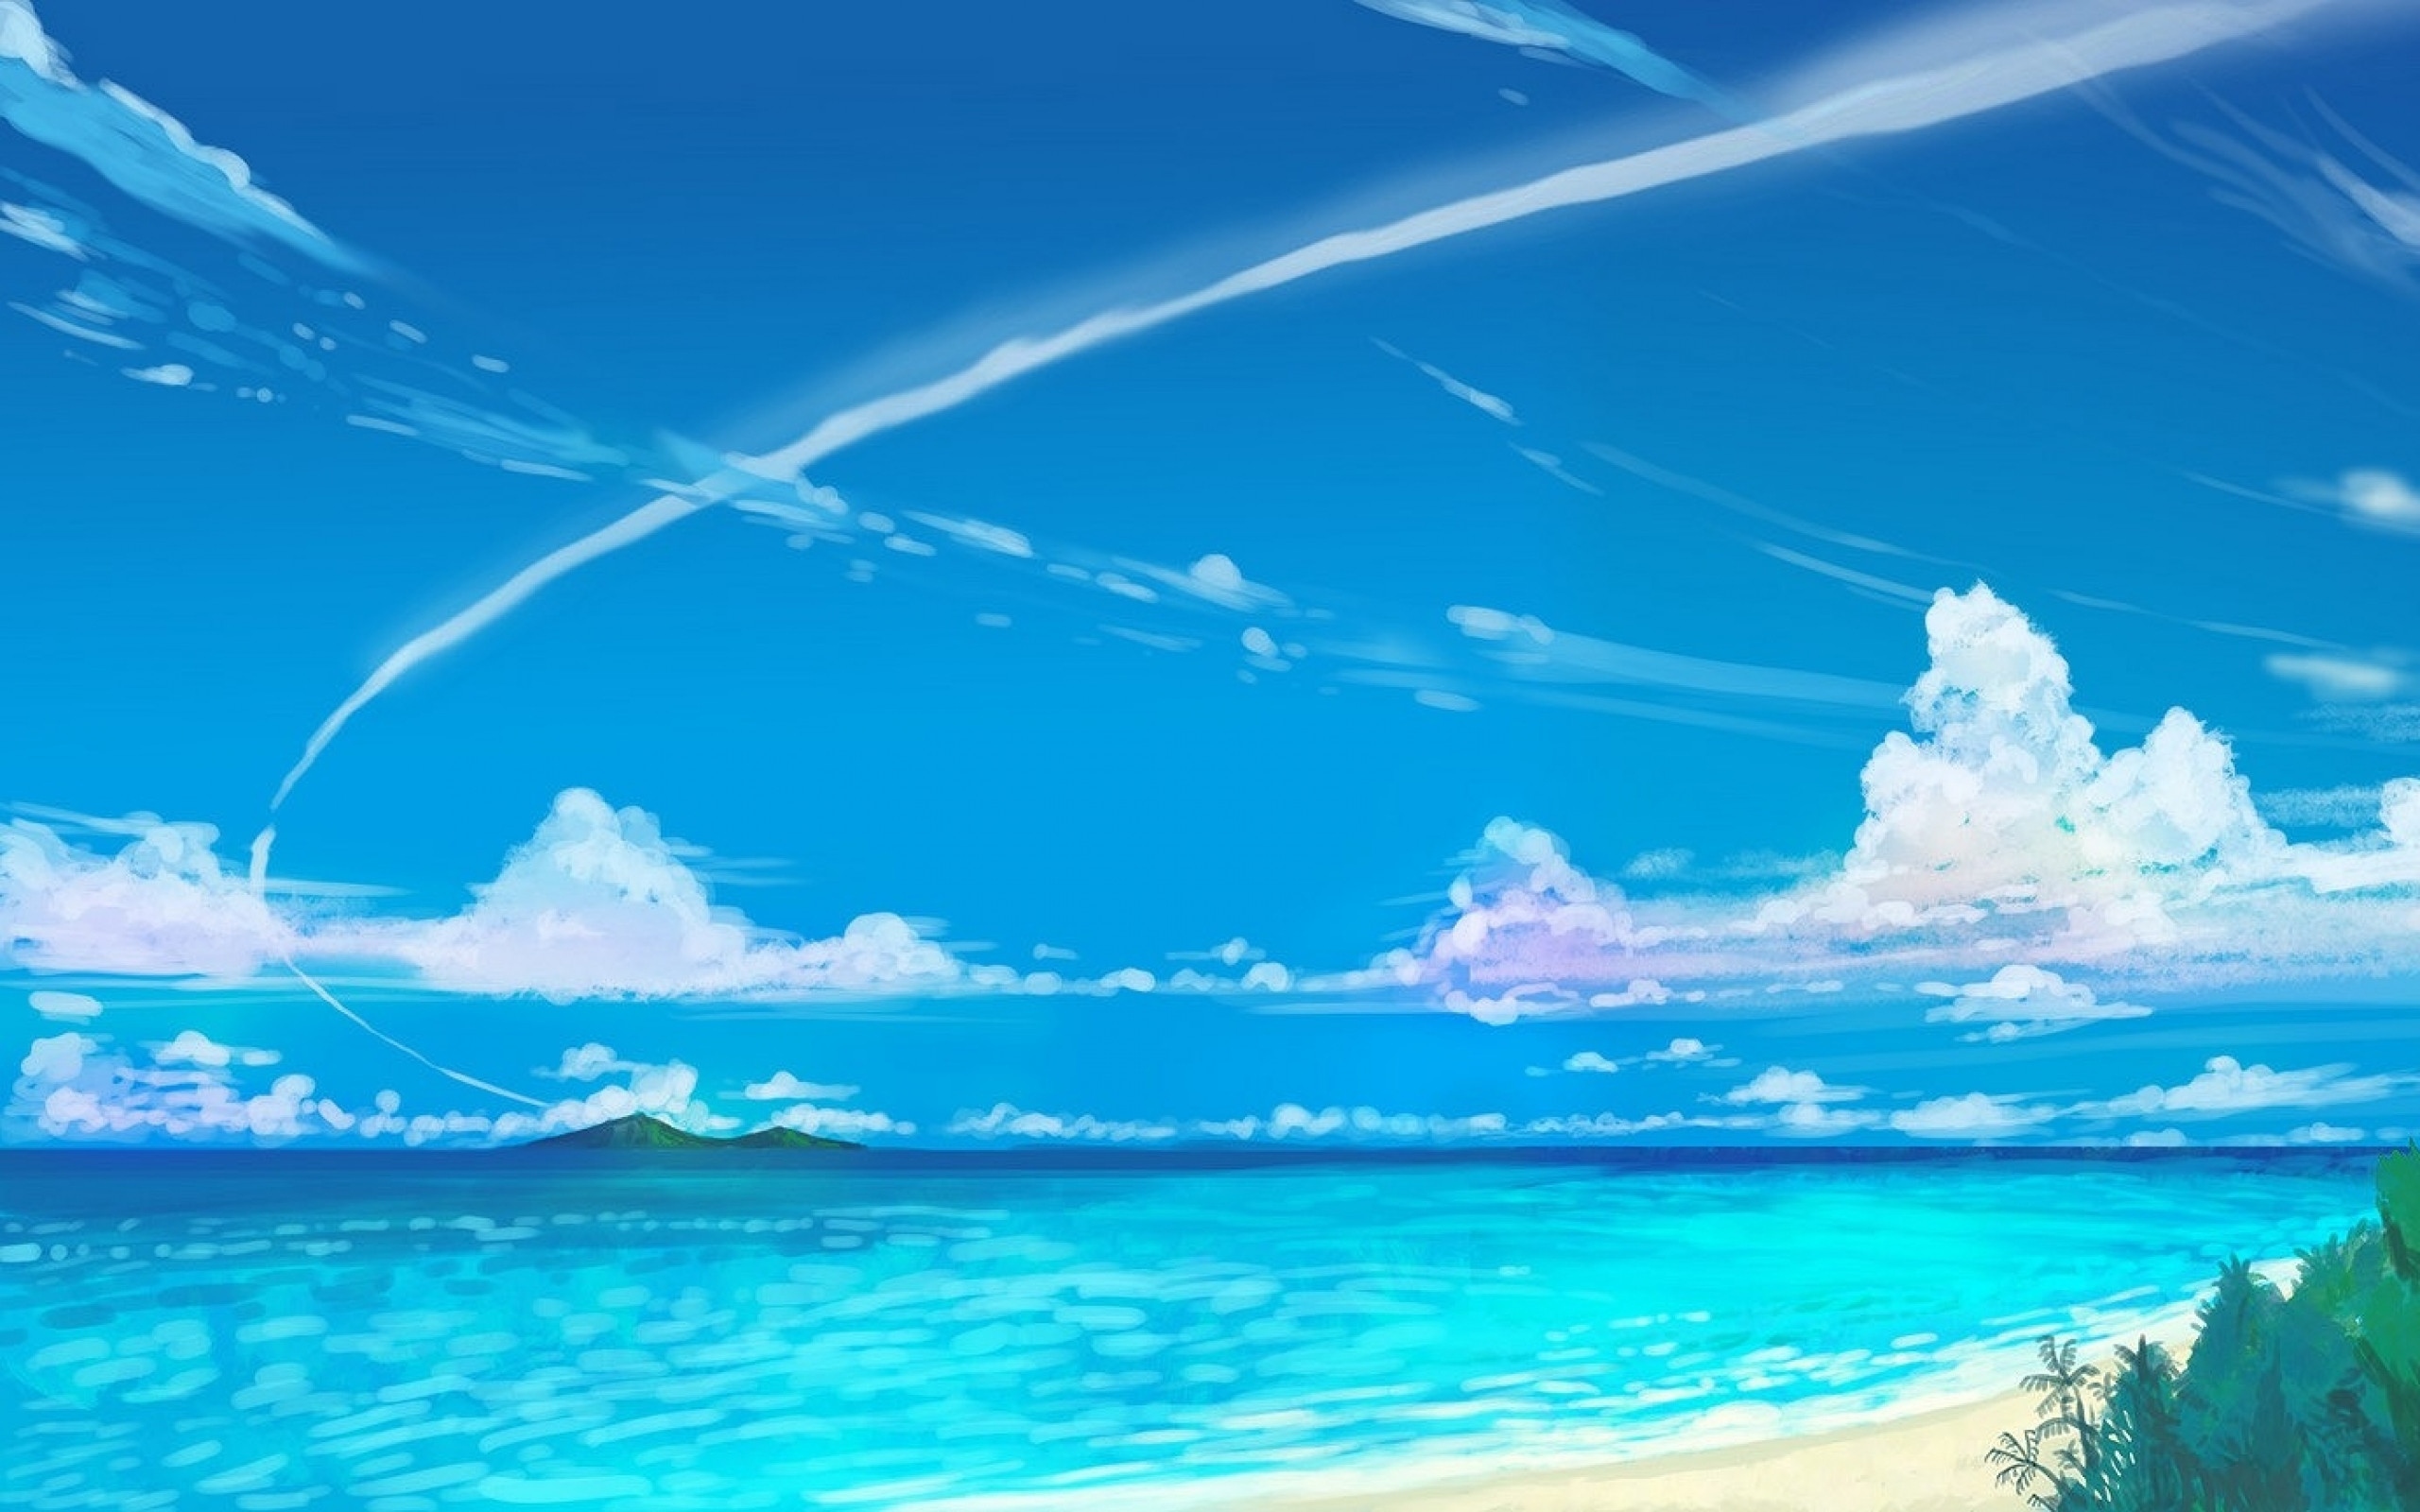 wallpaper for desktop, laptop | aw13-nemo-disney-film-anime-sea -illustration-art-blue